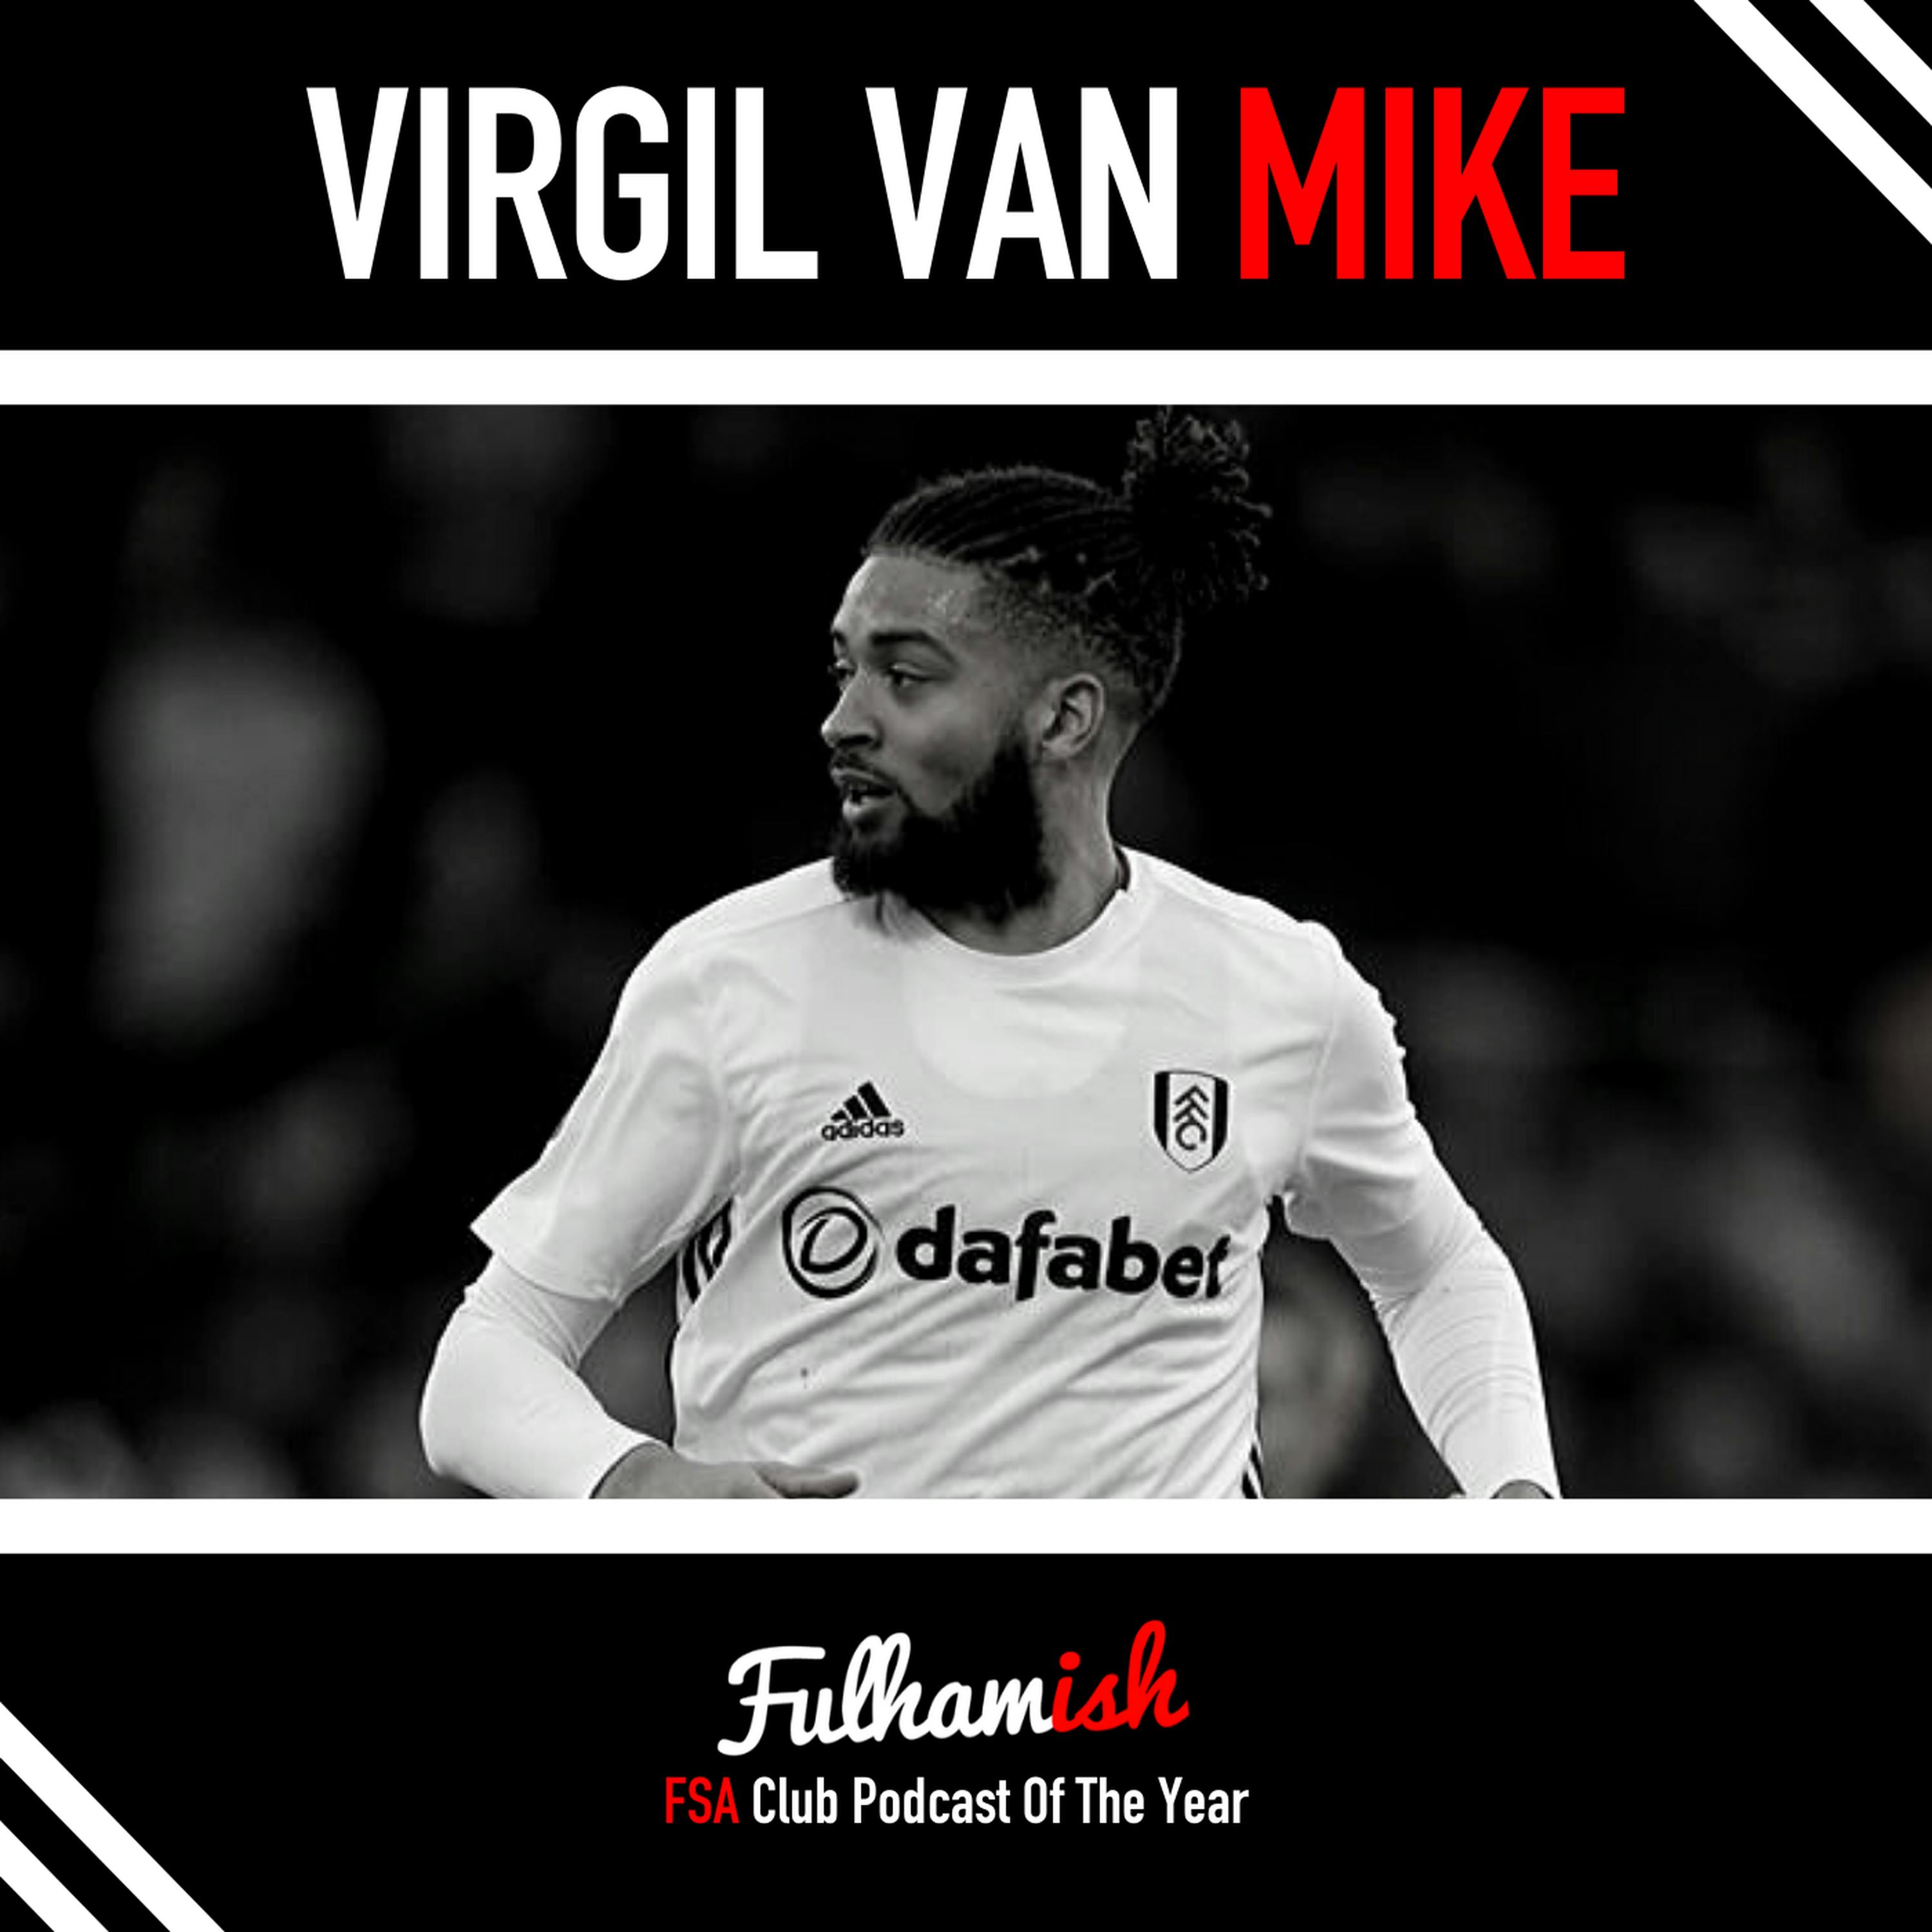 Virgil van Mike